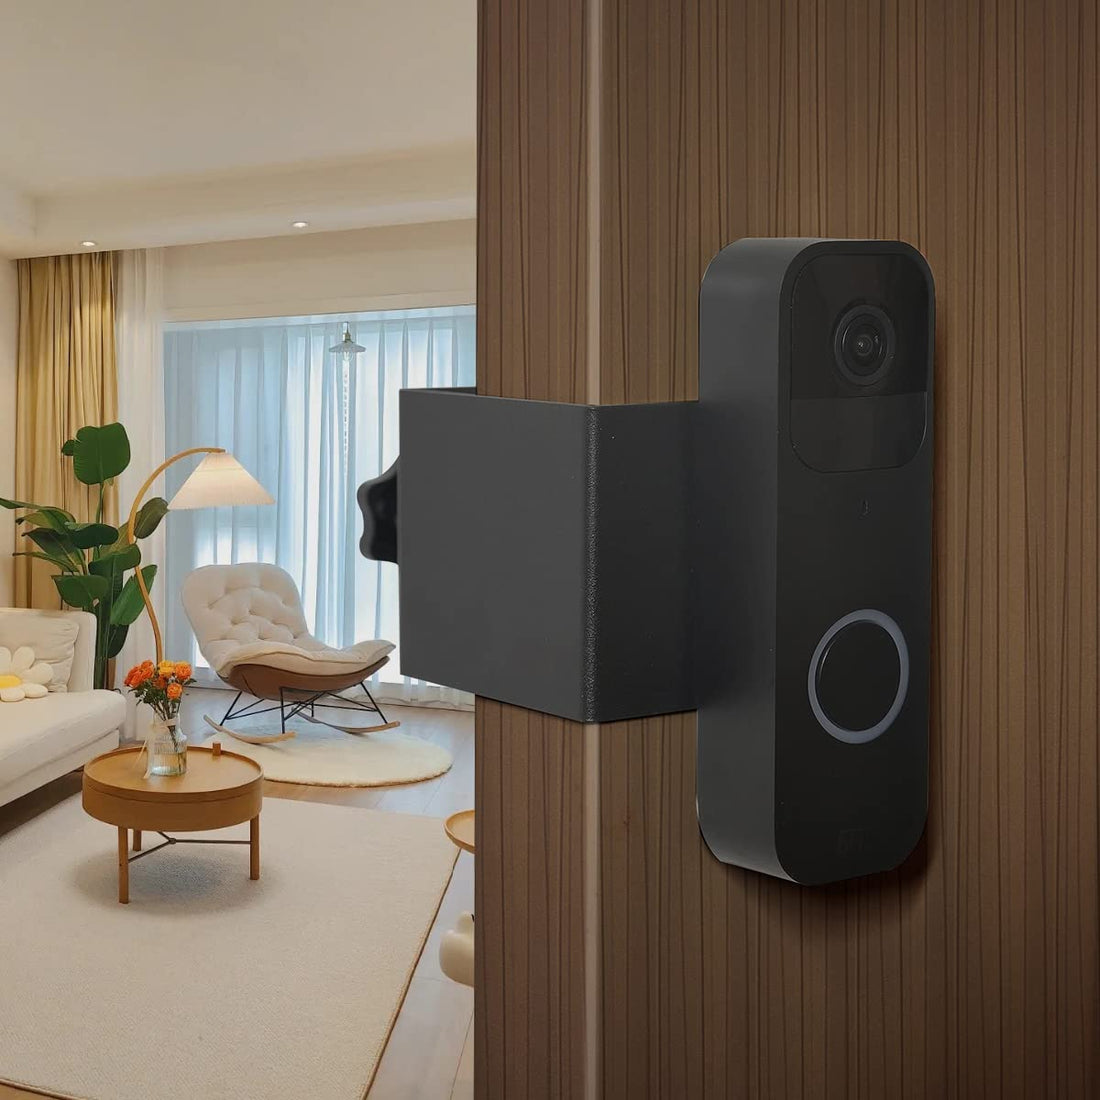 Anti theft Blink Doorbell Mount,No drill blink doorbell camera mount for Apartment door,Blink video doorbell holder Compatible with blink doorbell